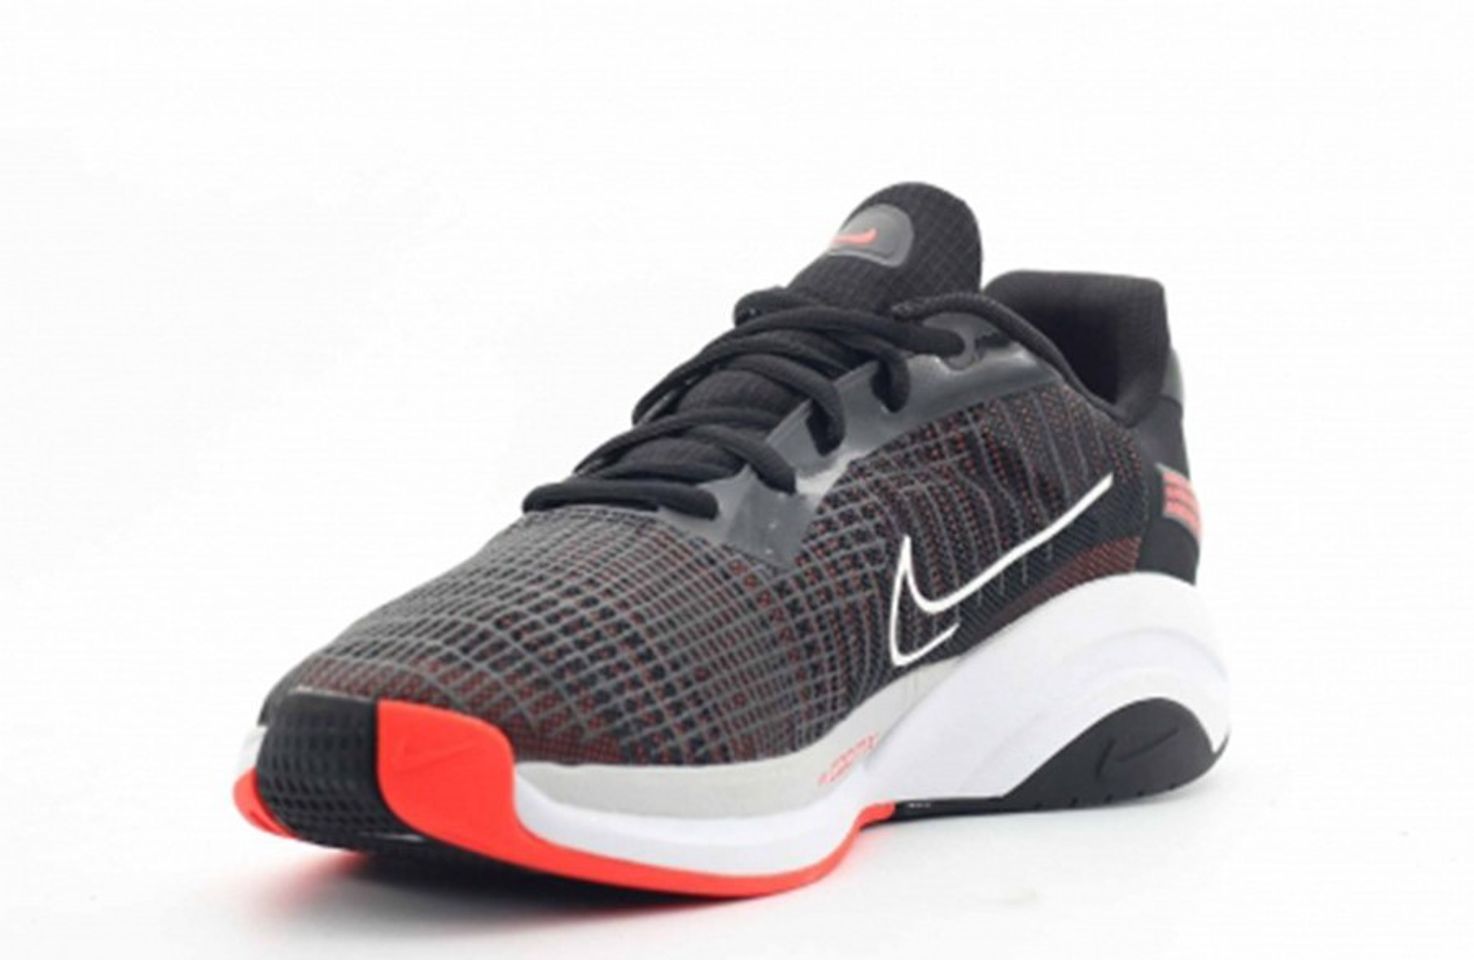 Giày thể thao Nike ZoomX Superrep Surge CK9406-016 màu đen đỏ